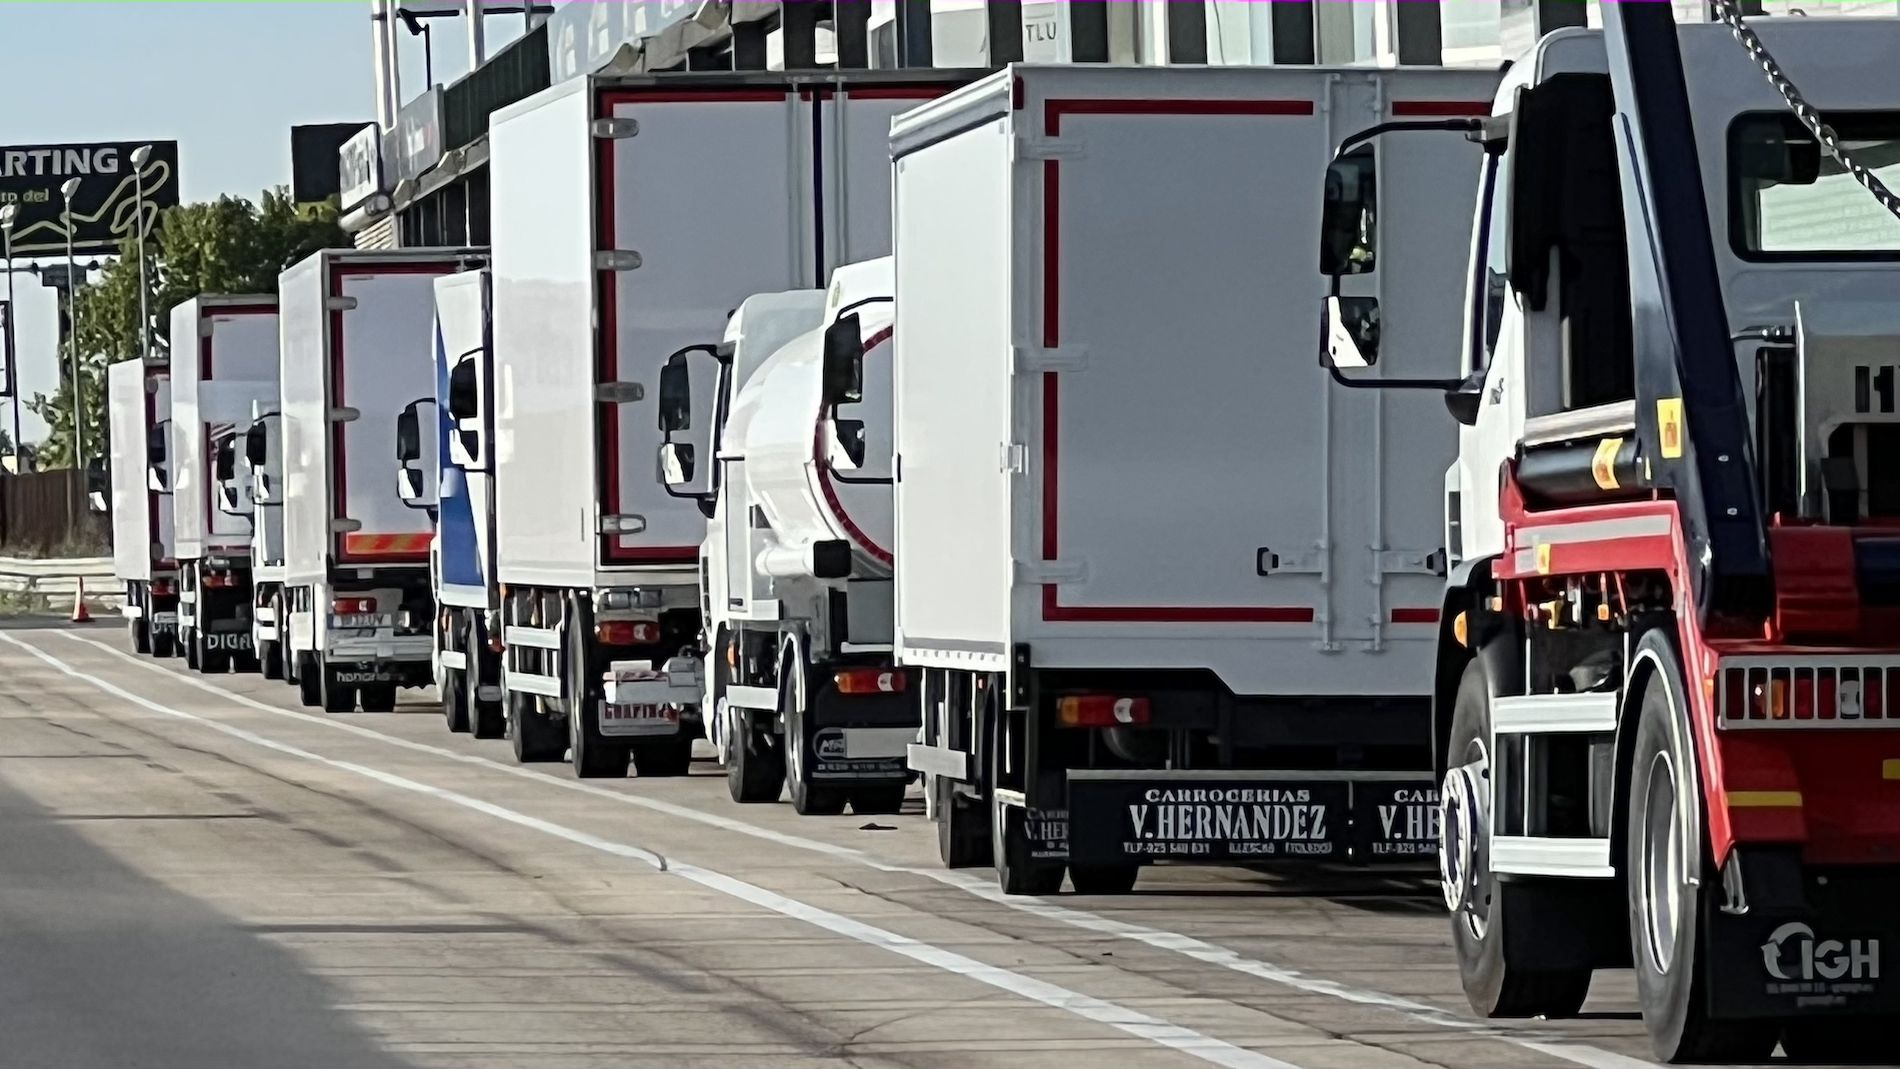 carrocerias camiones en fila distribucion carretera transporte